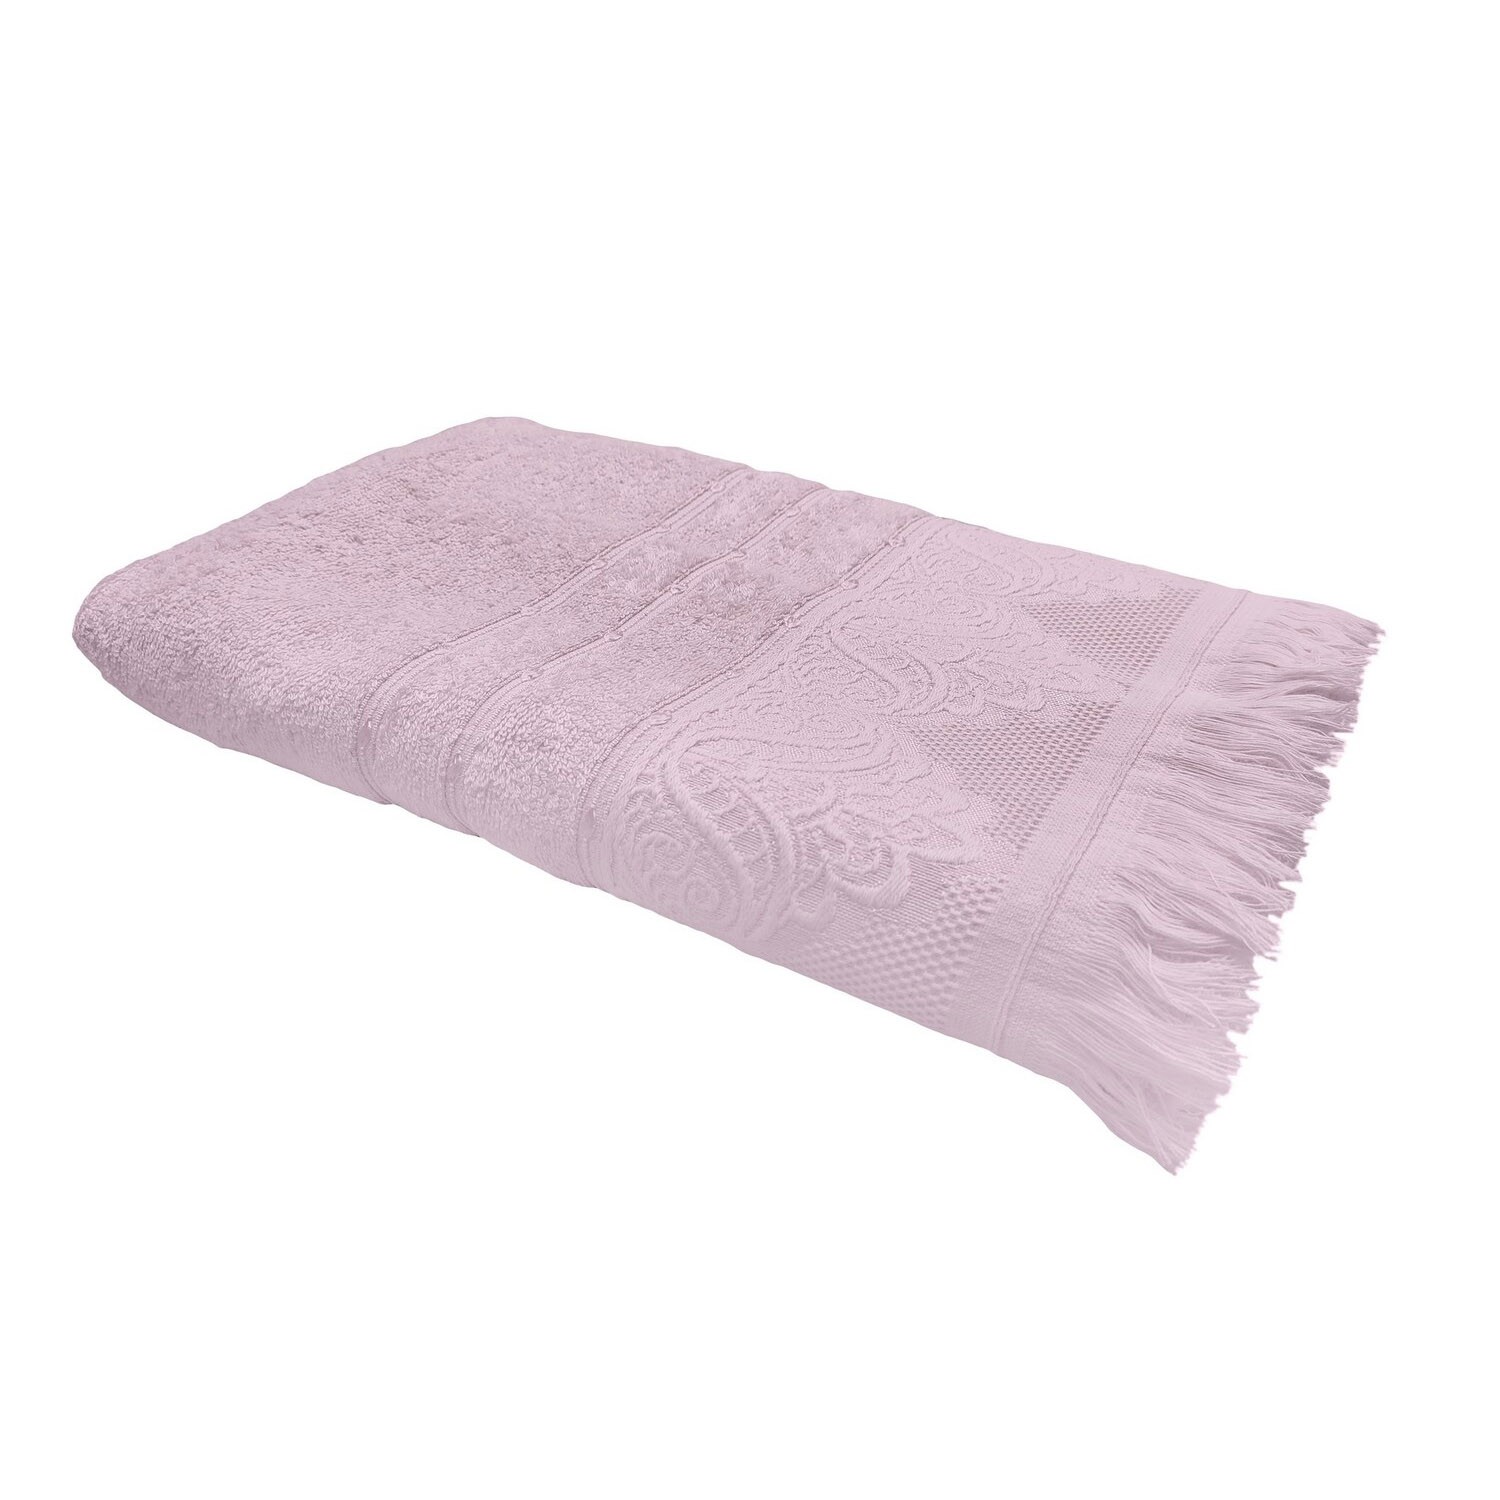 Полотенце Adajio цвет: розовый (50х90 см), размер 50х90 см pve759107 Полотенце Adajio цвет: розовый (50х90 см) - фото 1